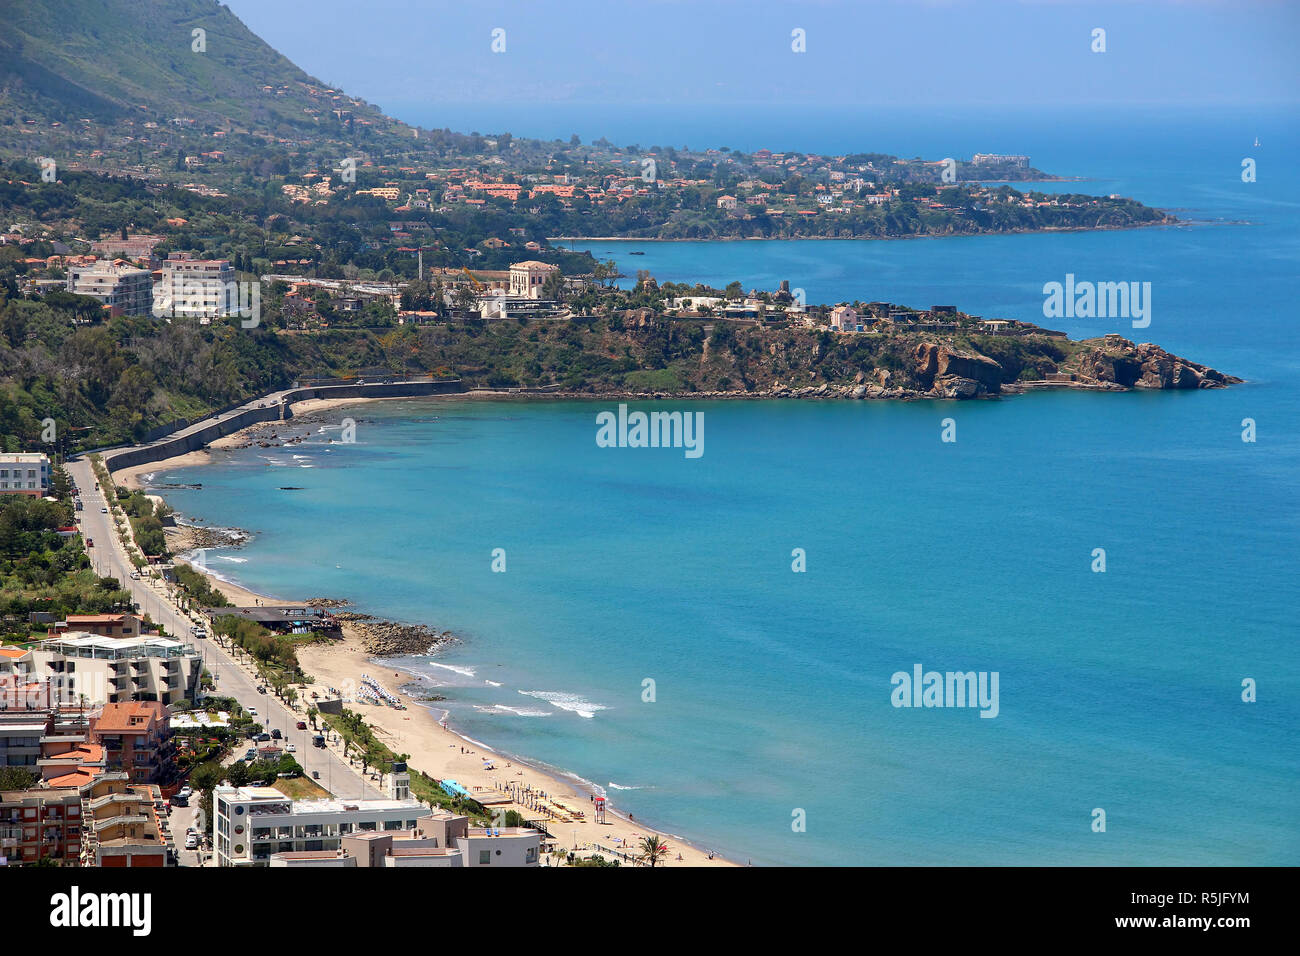 Vue aérienne de la plage de Cefalù et mer Méditerranée, Sicile, Italie Banque D'Images